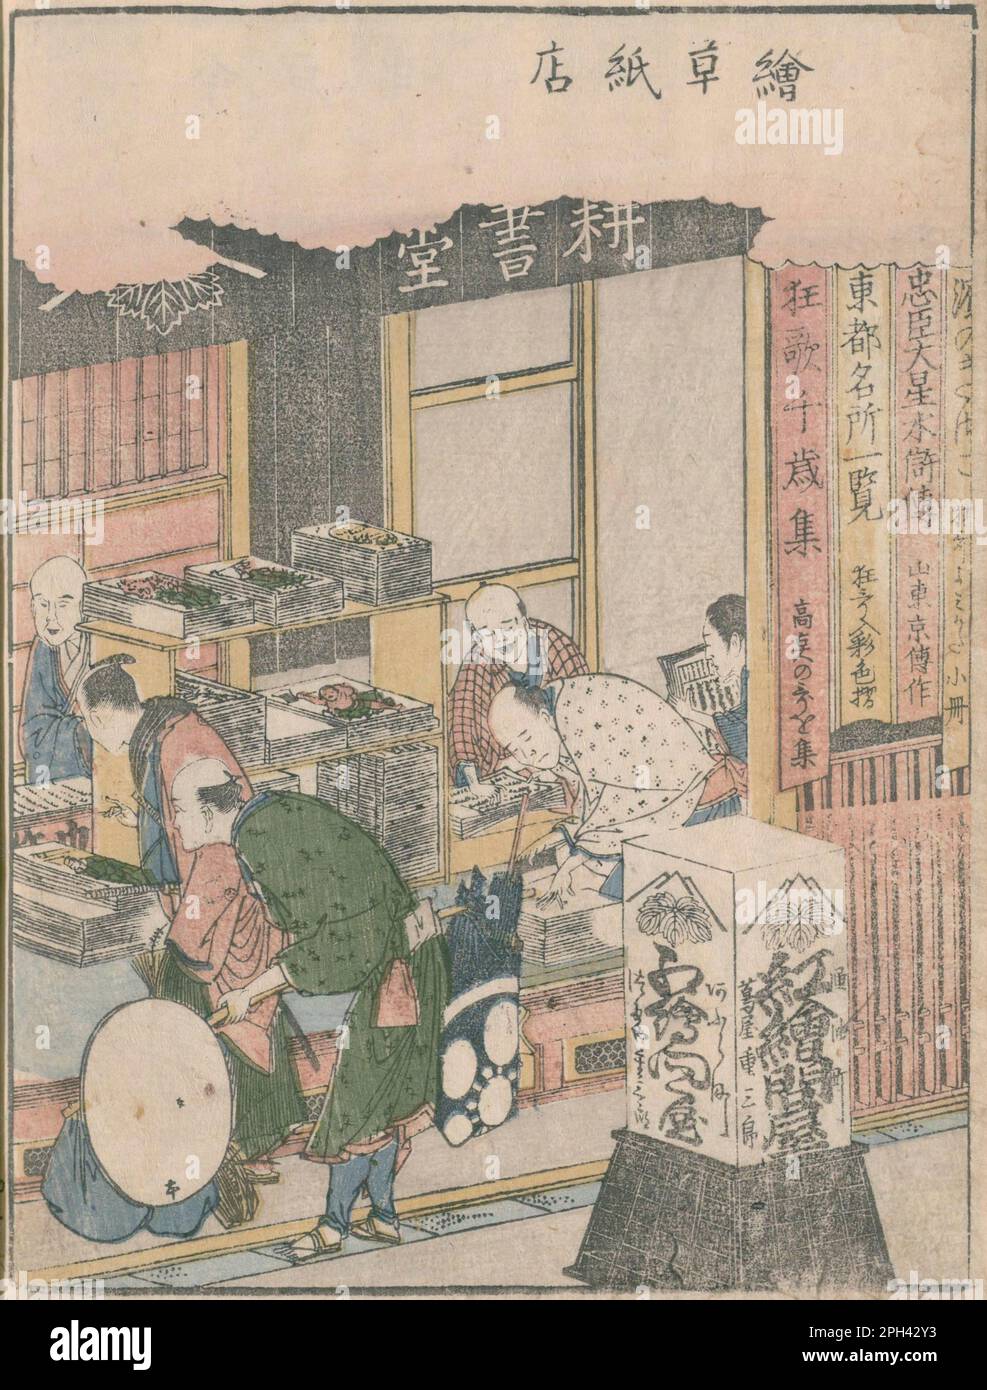 Illustration du Ezōshi Store Kōshodō, tiré de 'Ehon azuma asobi volume 3 ' publié en 1802, auteur Asakusaan (1755-1820), artiste Katsushika Hokusai (1760-1849). Voici un magasin de l'éditeur japonais Tsutaya Jūzaburō (1750-1790) à Edo, dans la période Edo. Banque D'Images